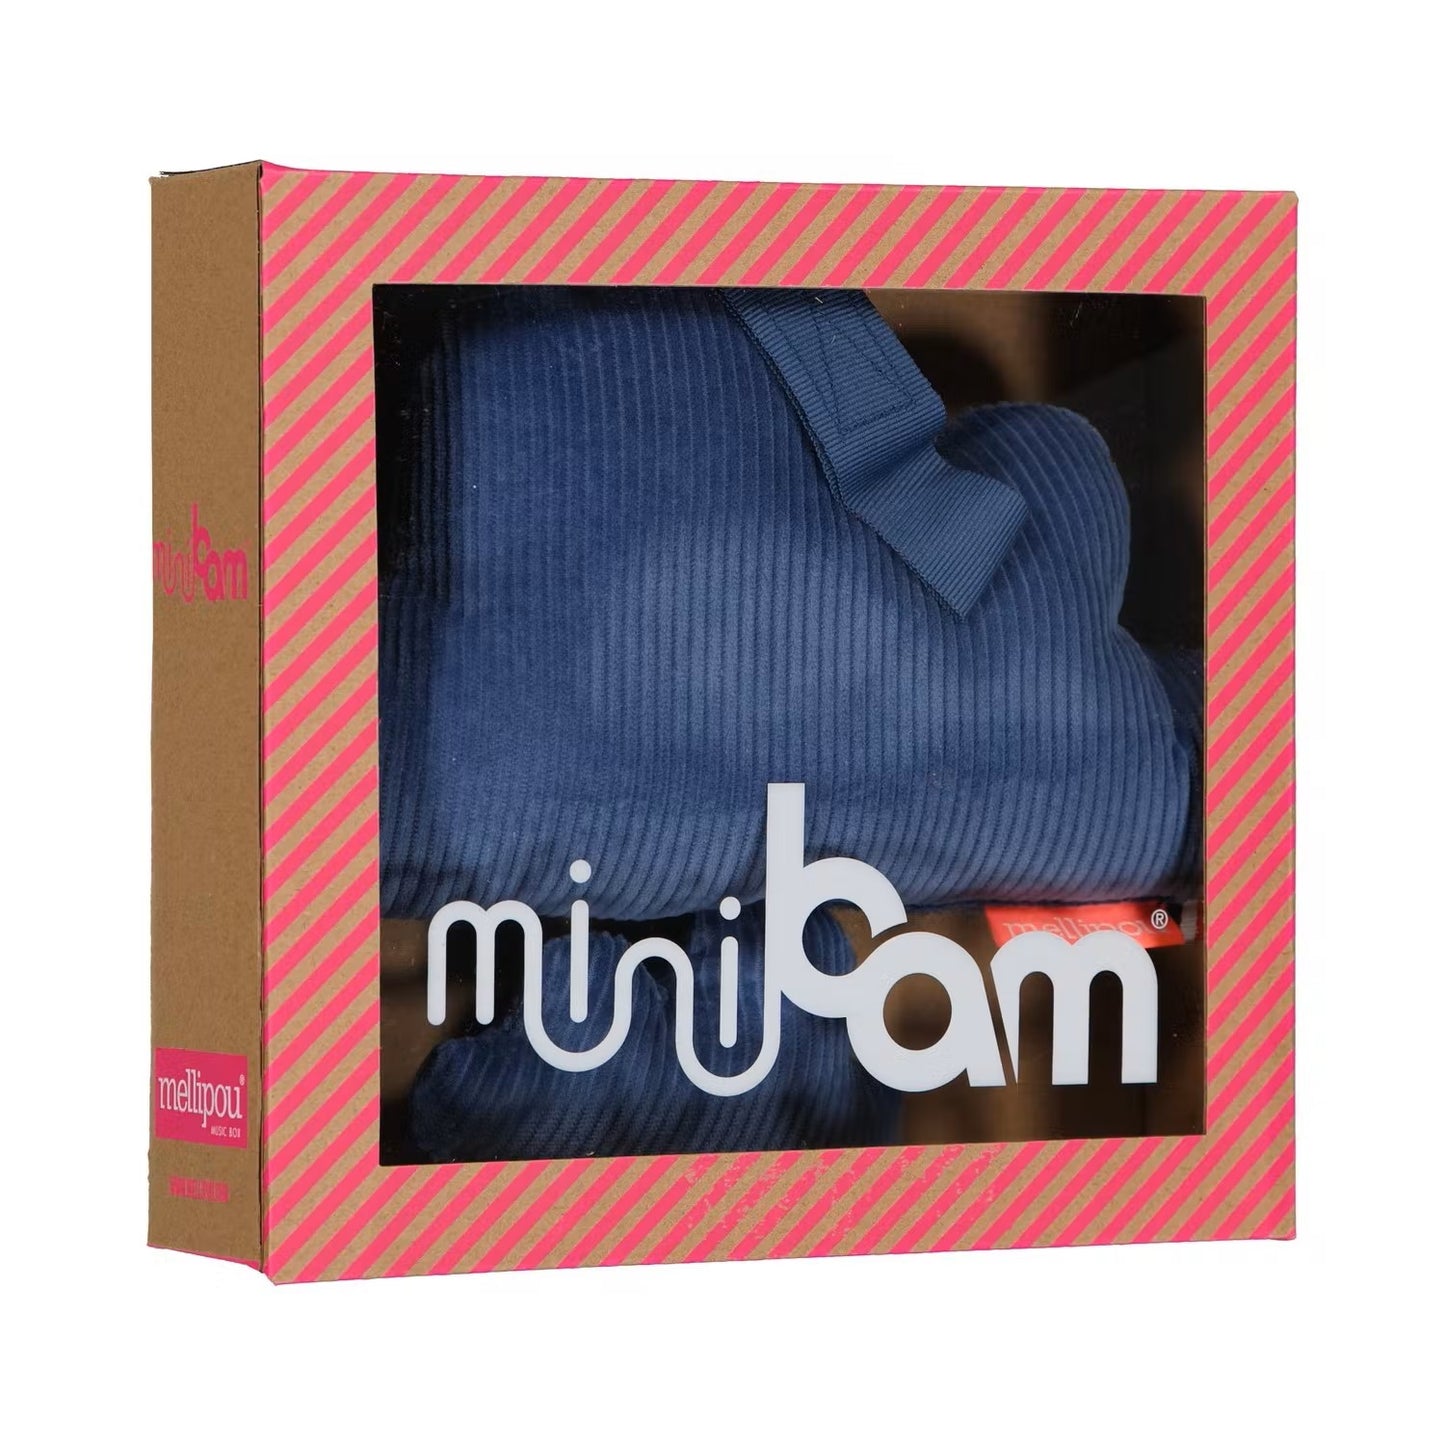 Minibam musical cushion | Kim – The Doors